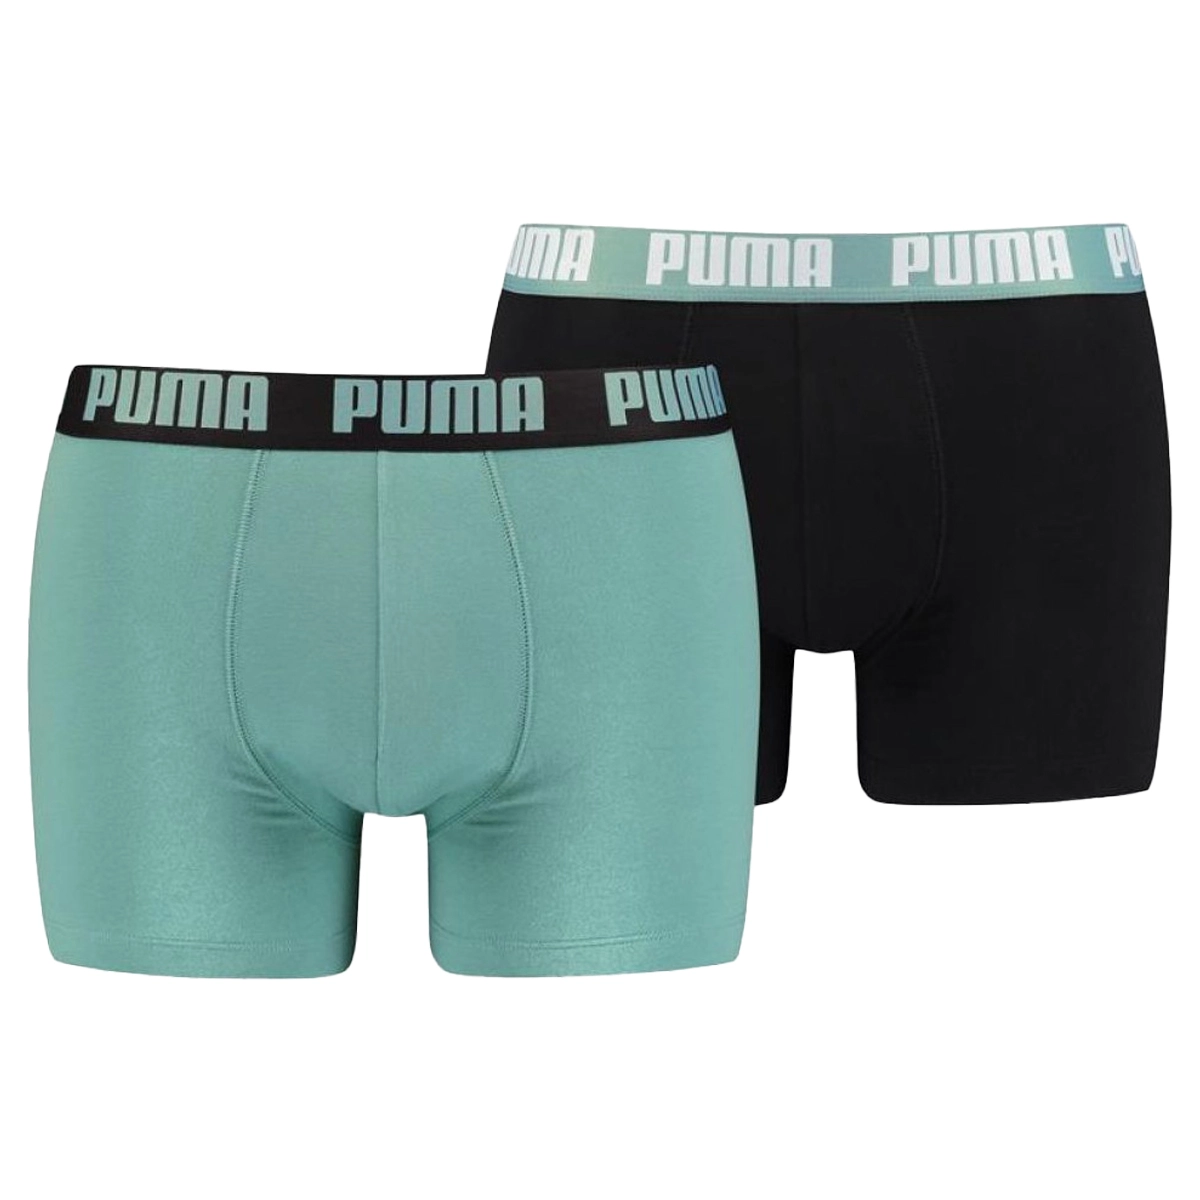 Karakteriseren loyaliteit verwerken Puma 2-Pack Basic Boxershorts van boxershorts